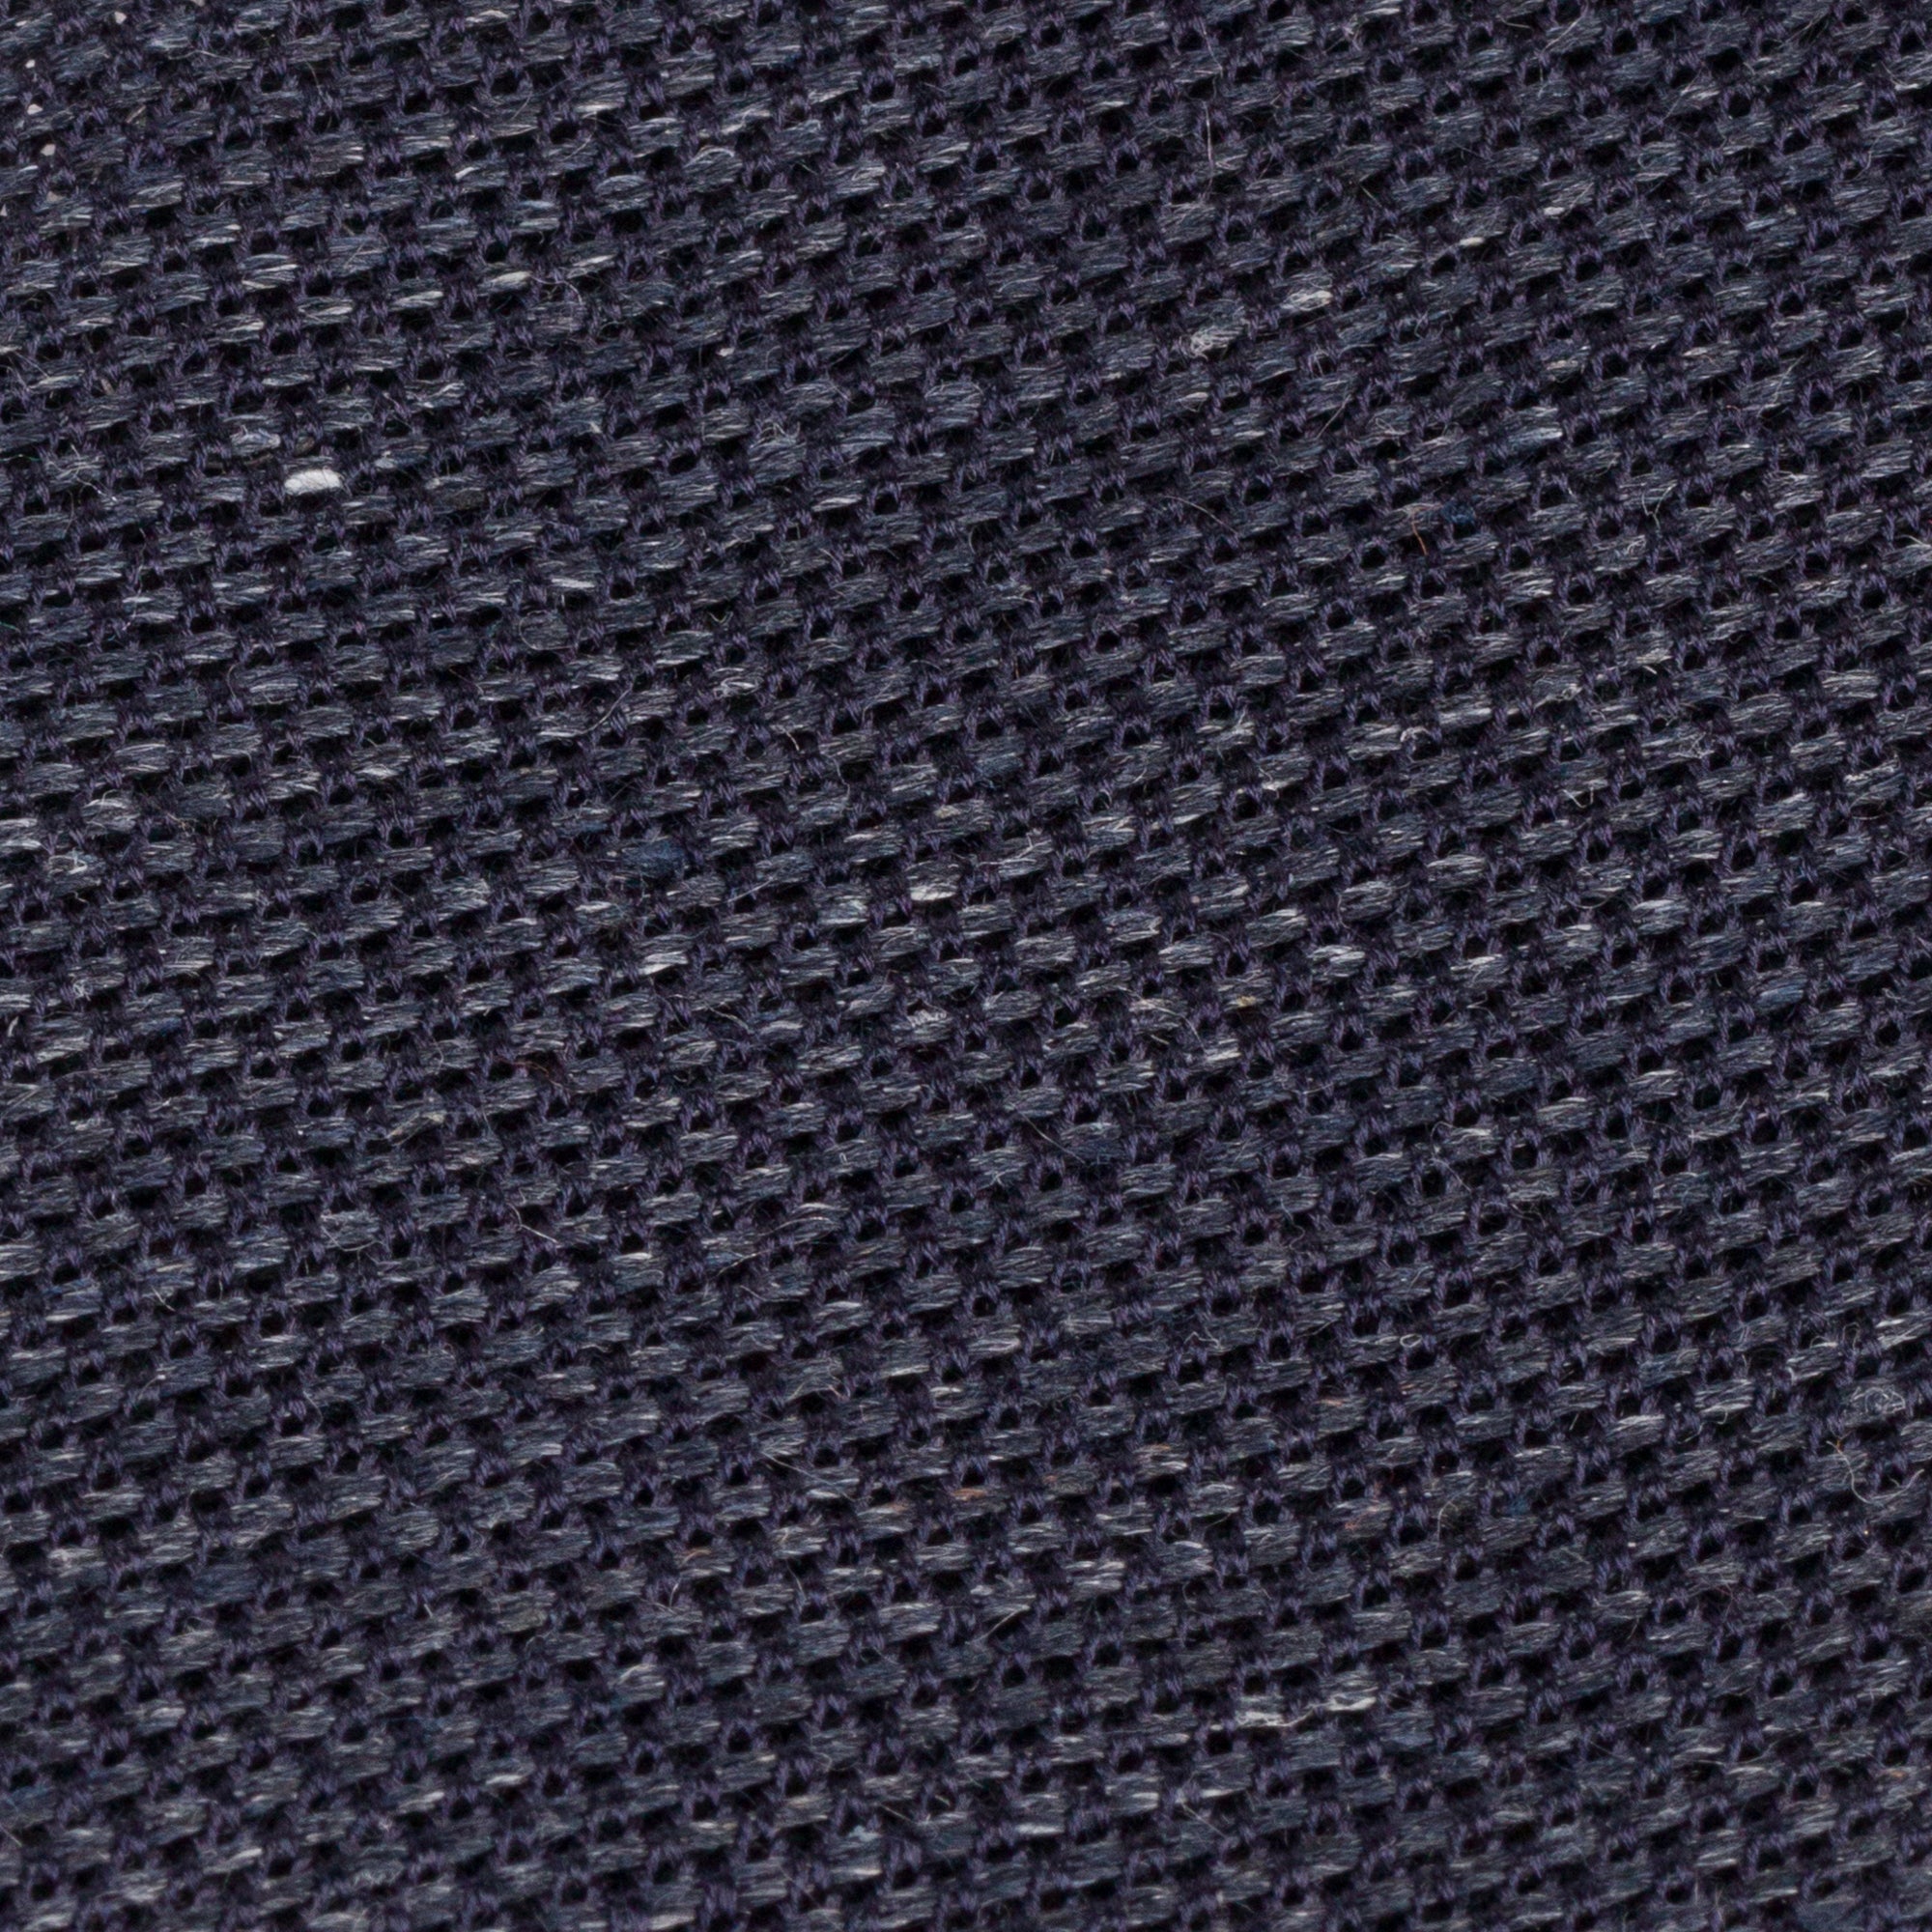 Charcoal Silk Linen Grenadine Tie